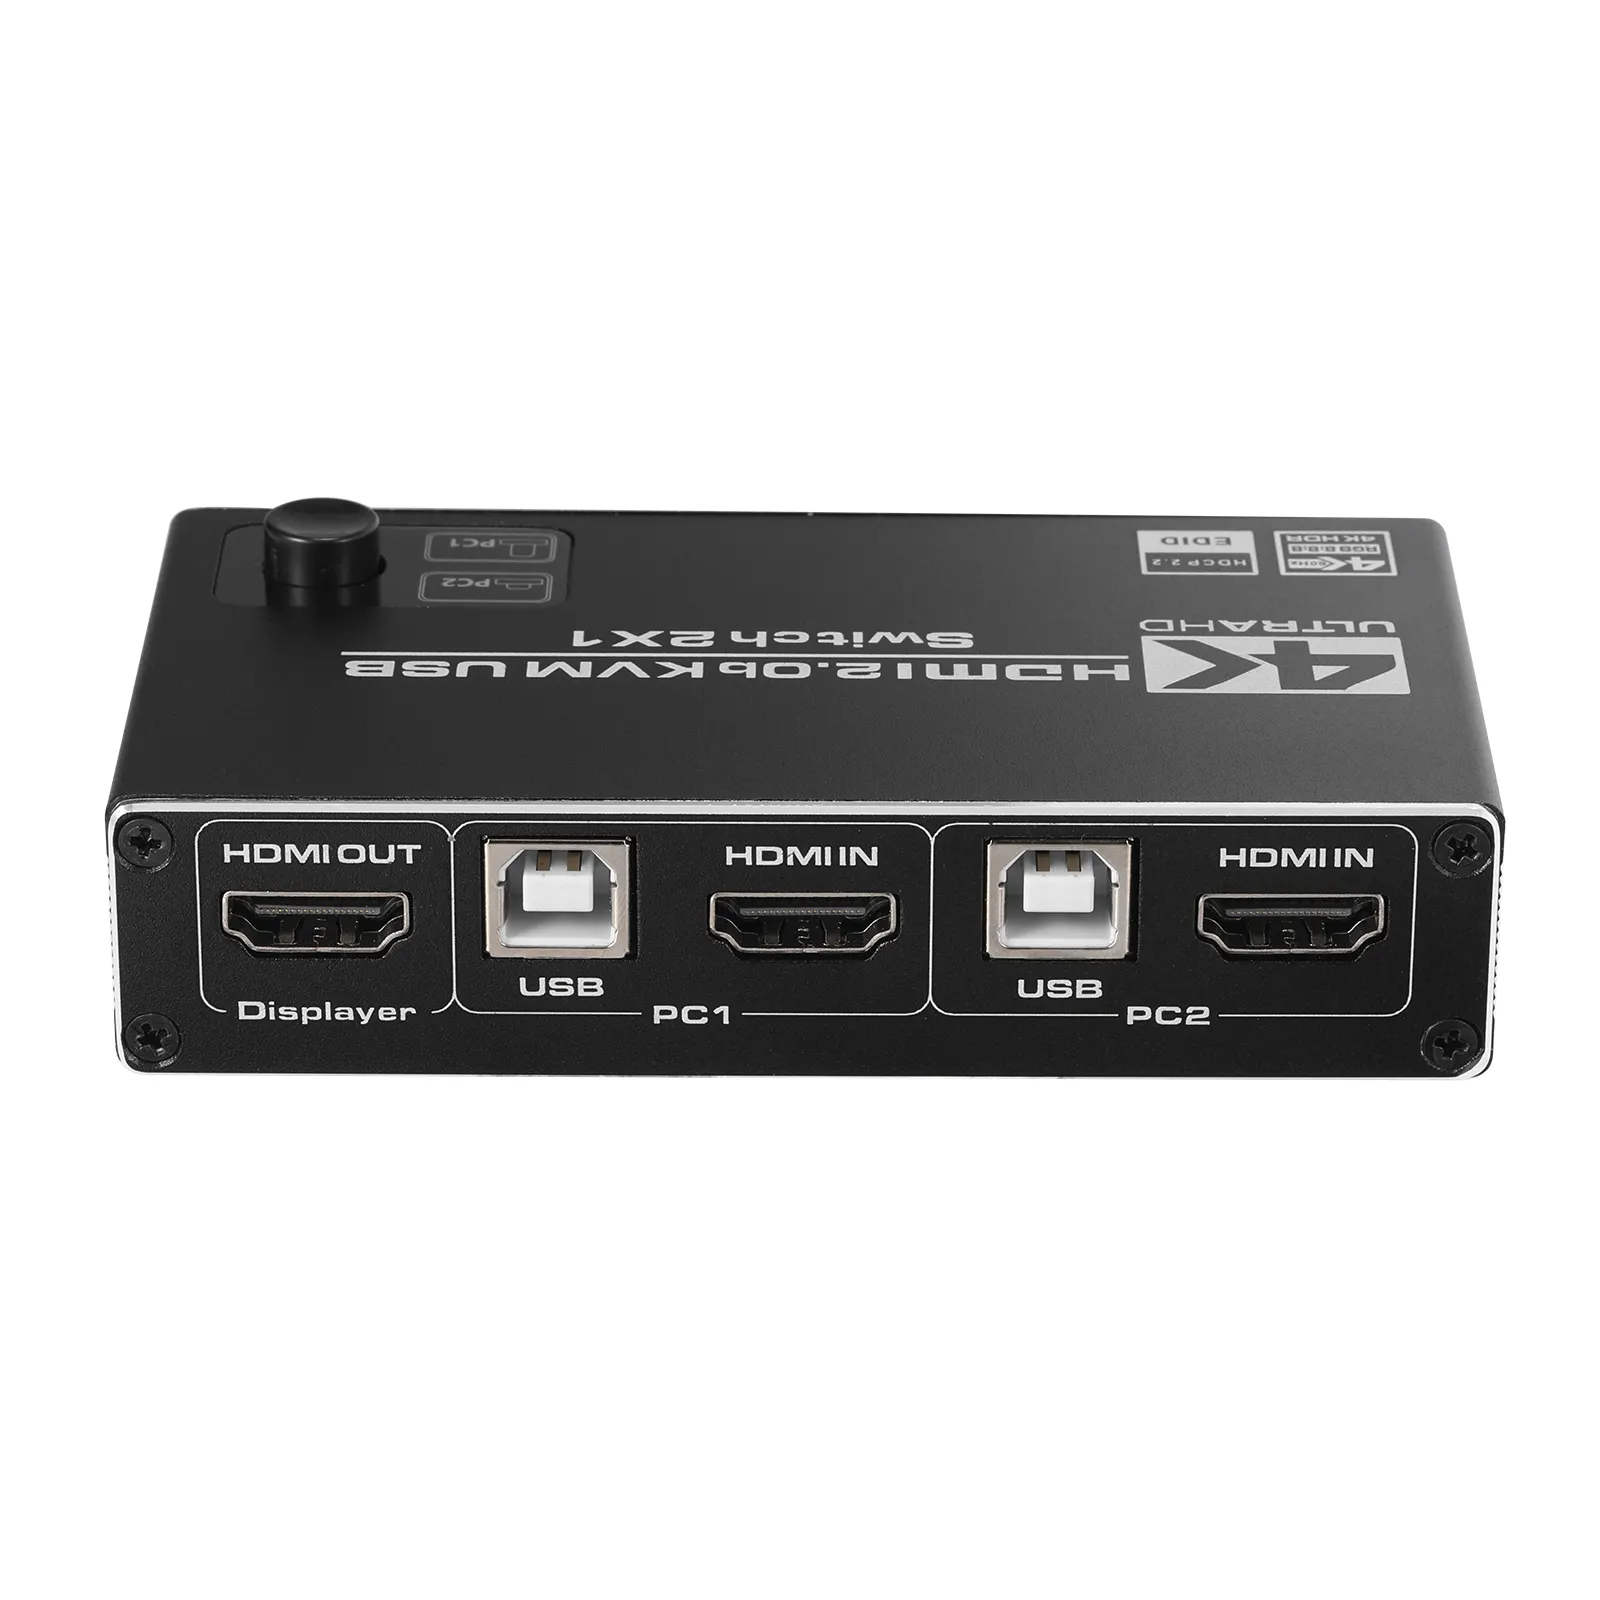 2 포트 USB HDMI KVM 스위치 4K @ 60Hz RGB/YUV HDR HDMI 2.0 스위처 2X1 지원 키보드 마우스 프린터